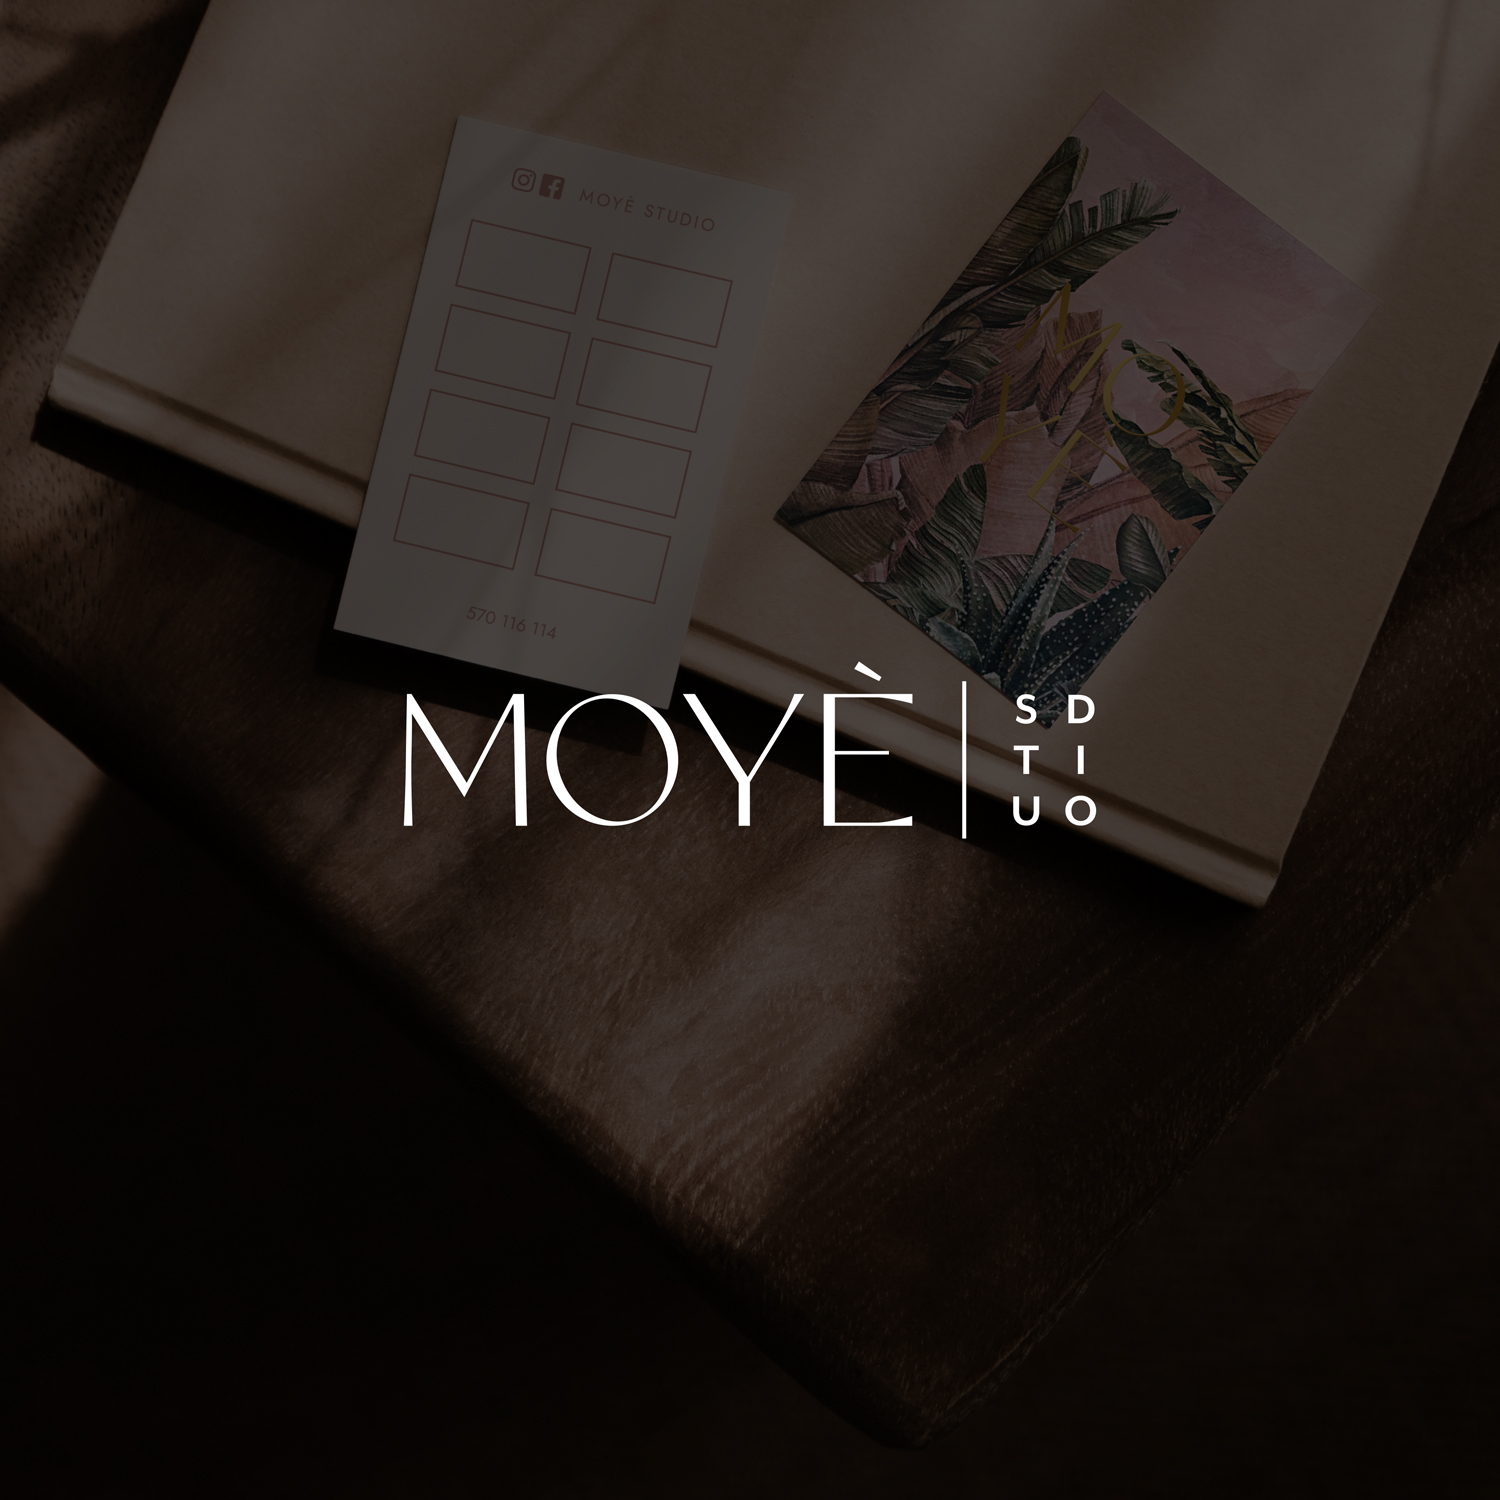 Moye studio fitness - identyfikacja wizualna, grafiki reklamowe, materiały firmowe: ulotki, voucher, karnet | Portfolio Moyemu